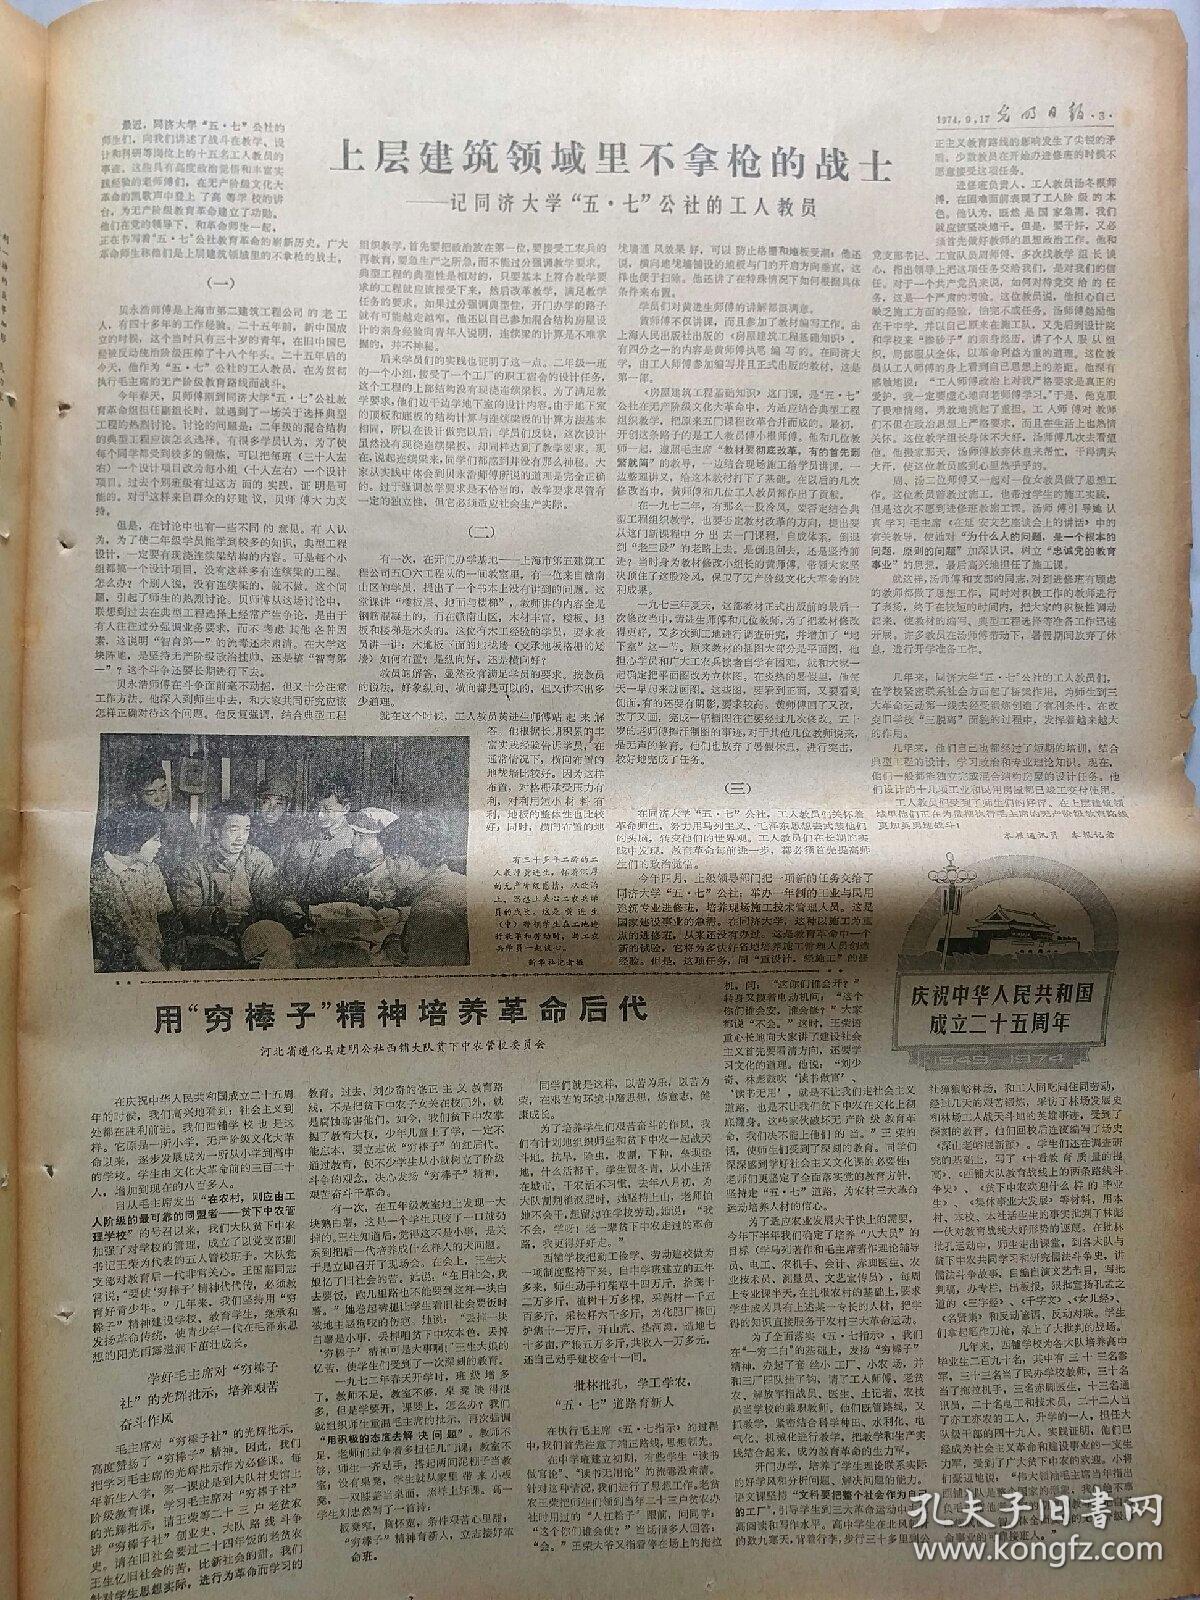 报纸:光明日报1974年9月17日，今日四版全。【热烈欢迎达达赫总统】【戈登将军访问中华人民共和国新闻公报】【庆祝墨西哥宣布独立一百六十四周年】